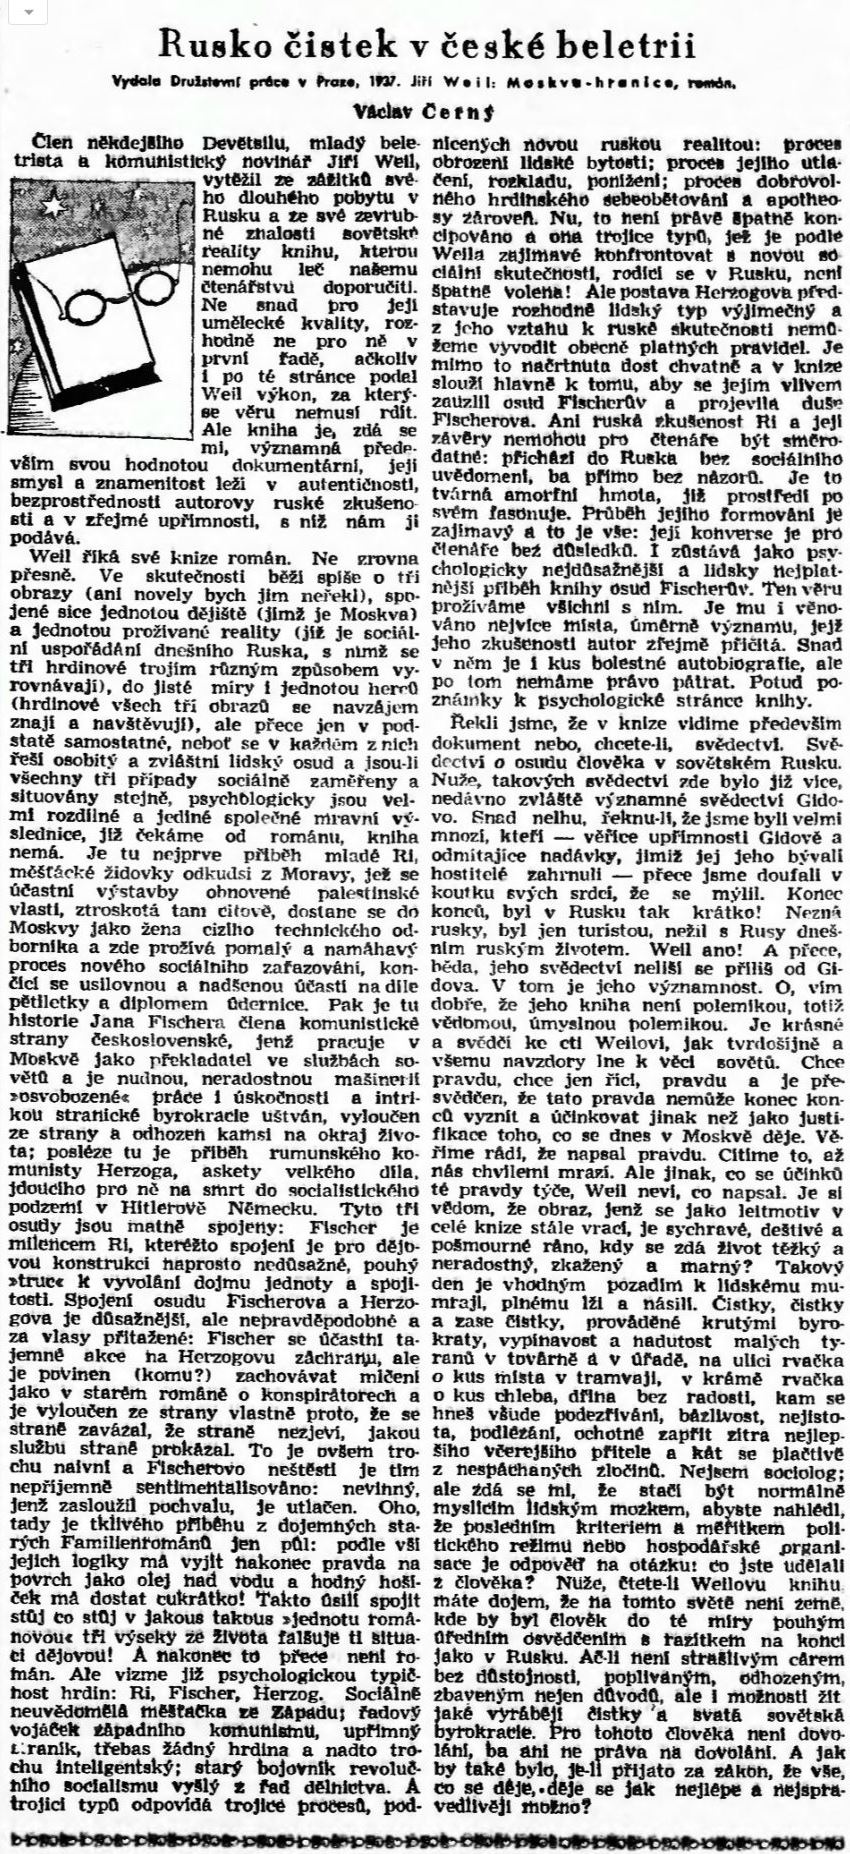 Recenze knihy Moskva-hranice od Václava Černého, Lidové noviny, 1938. Zdroj: NK/cechoslovacivgulagu.cz